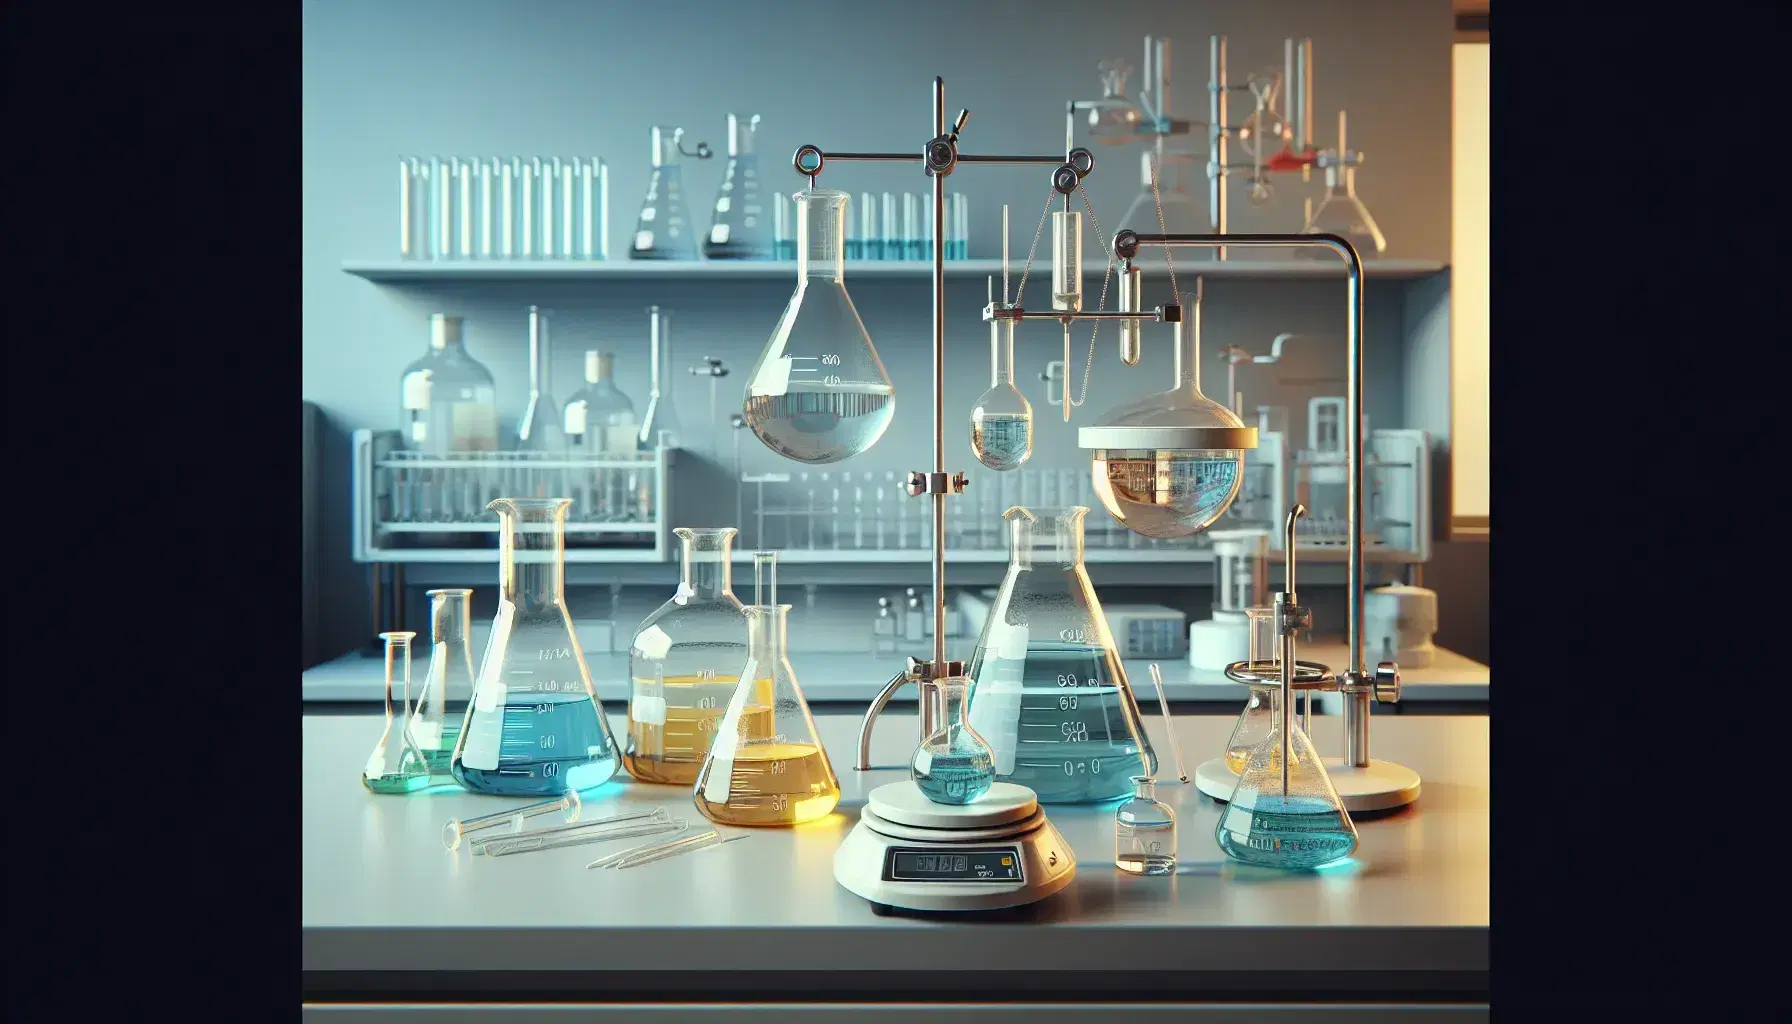 Laboratorio de química con matraces Erlenmeyer de líquidos coloridos, embudo de separación, balanza analítica y utensilios de vidrio.